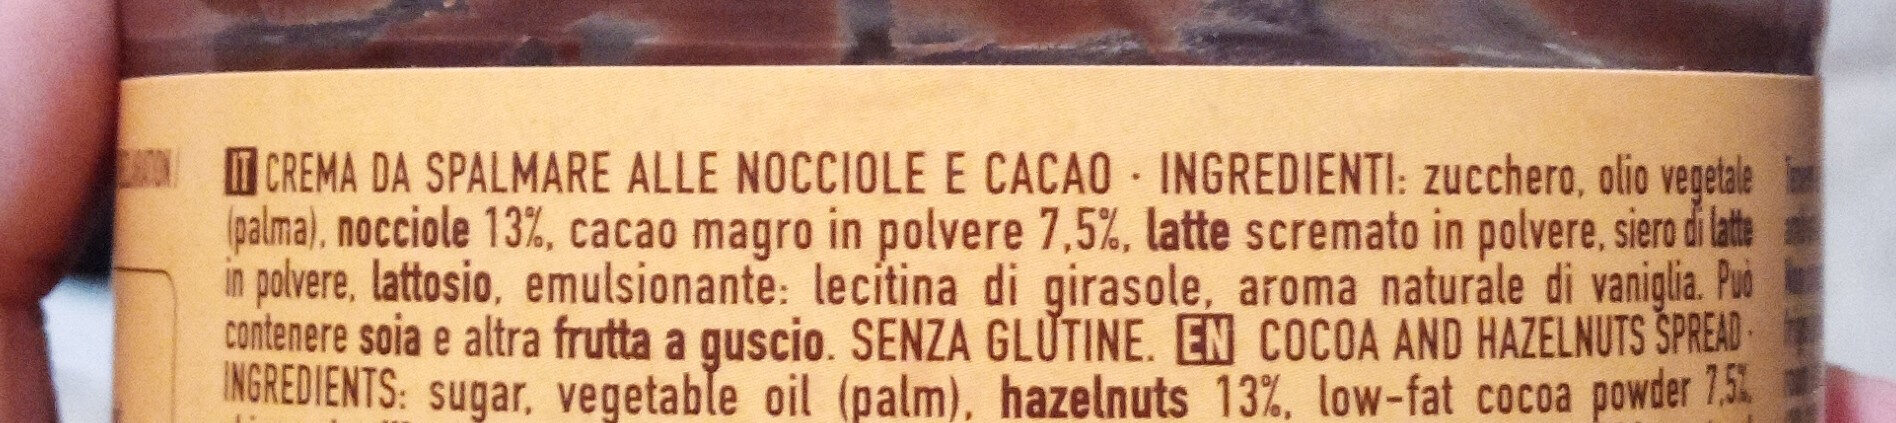 Crema cacao con nocciole - Sastojci - it